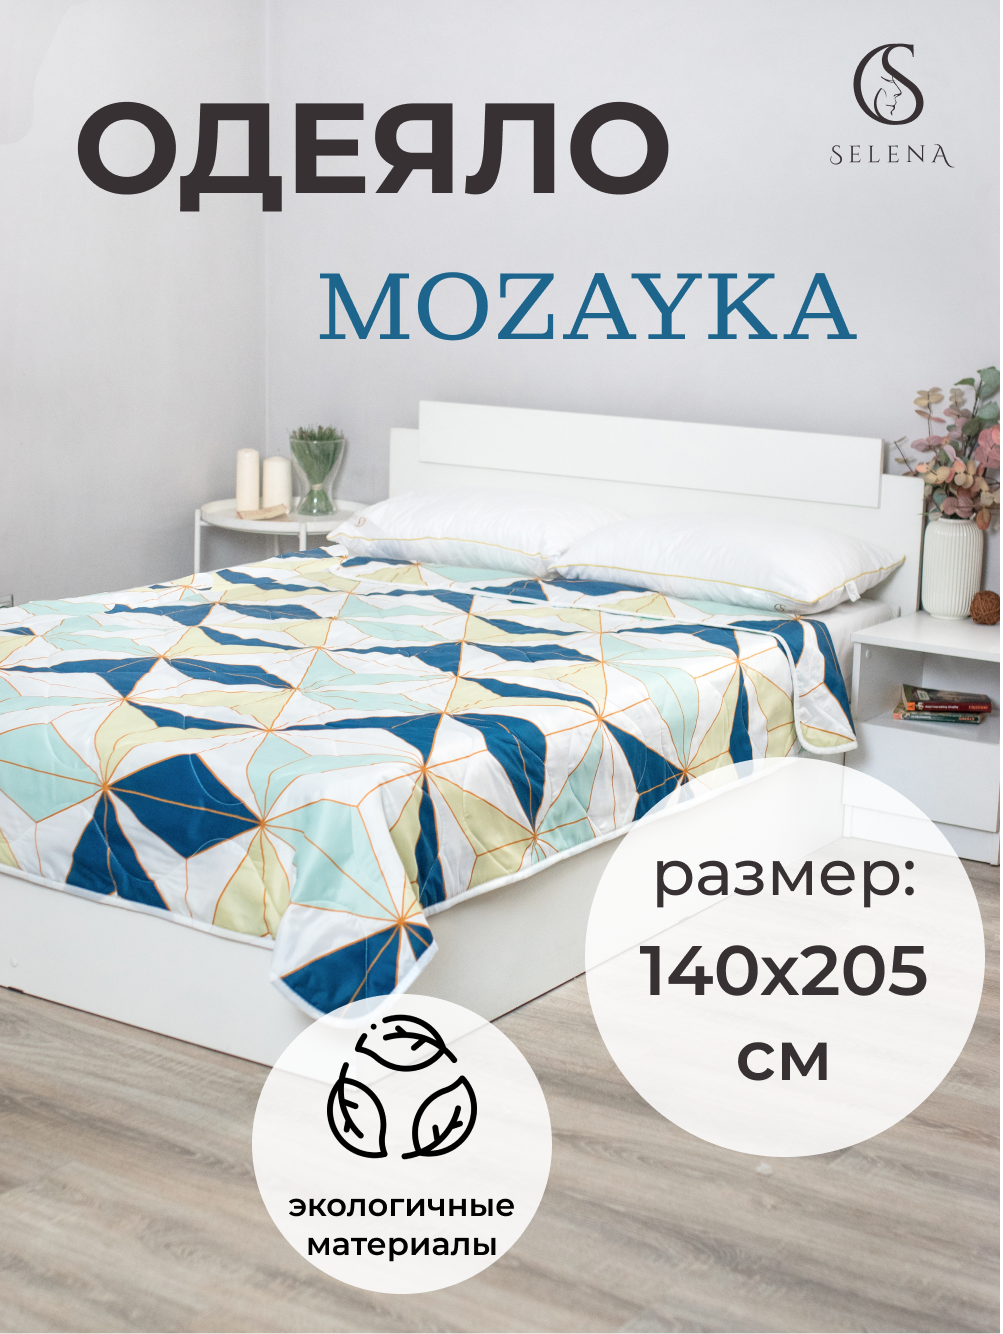 Одеяло SELENA "Mozayka" облегченное